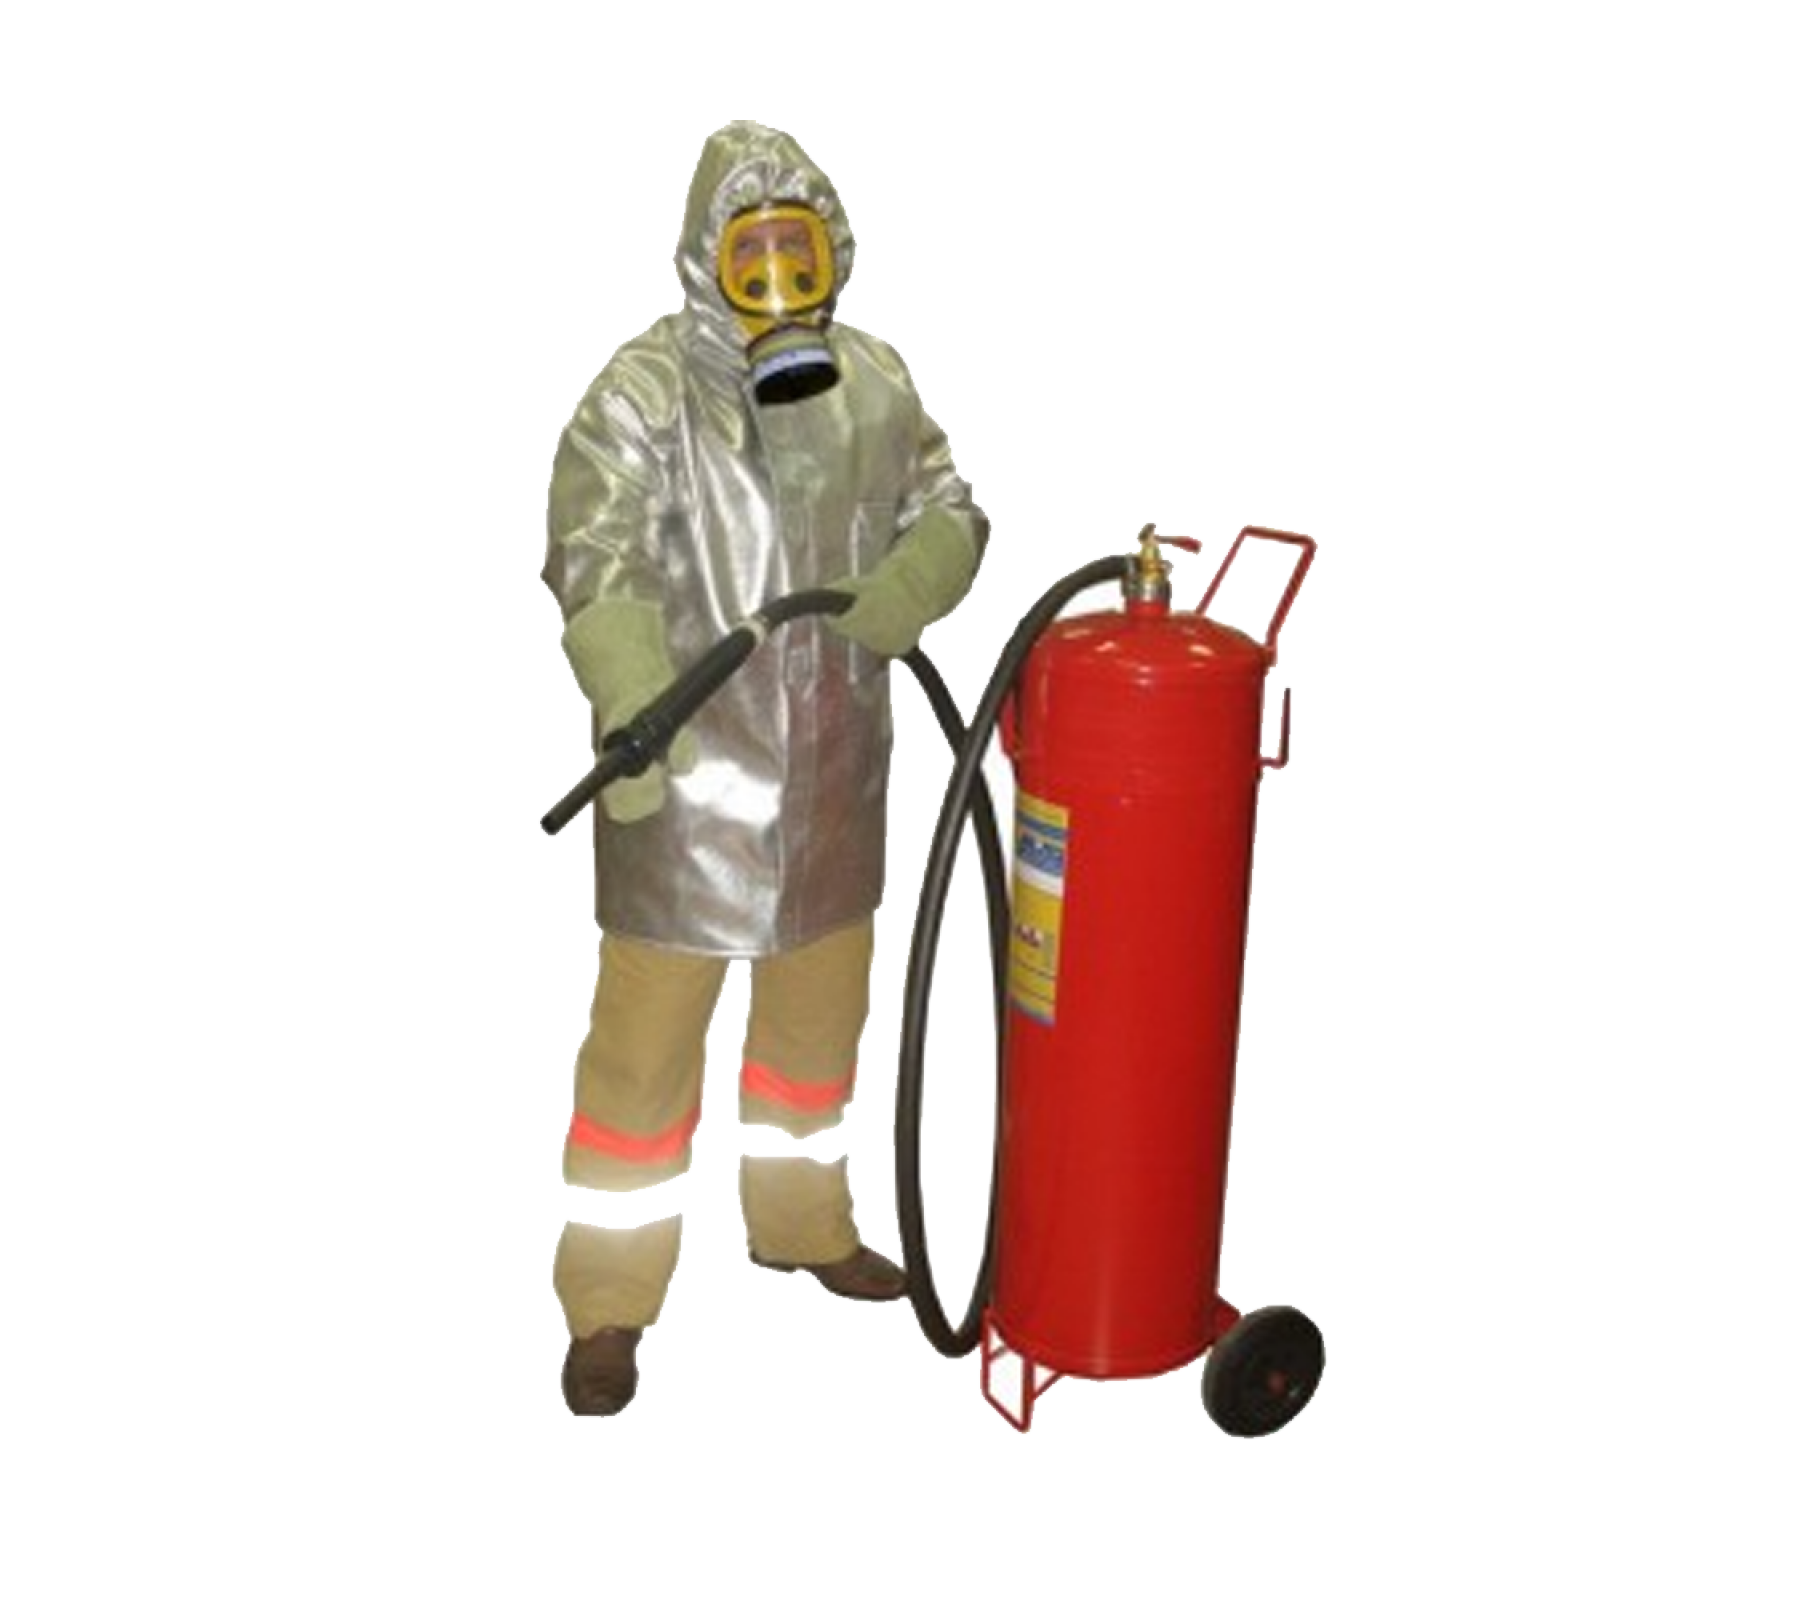 Плащ металлизированный комплекта защитной экипировки пожарного-добровольца (КЗЭПД) «Шанс»-Д